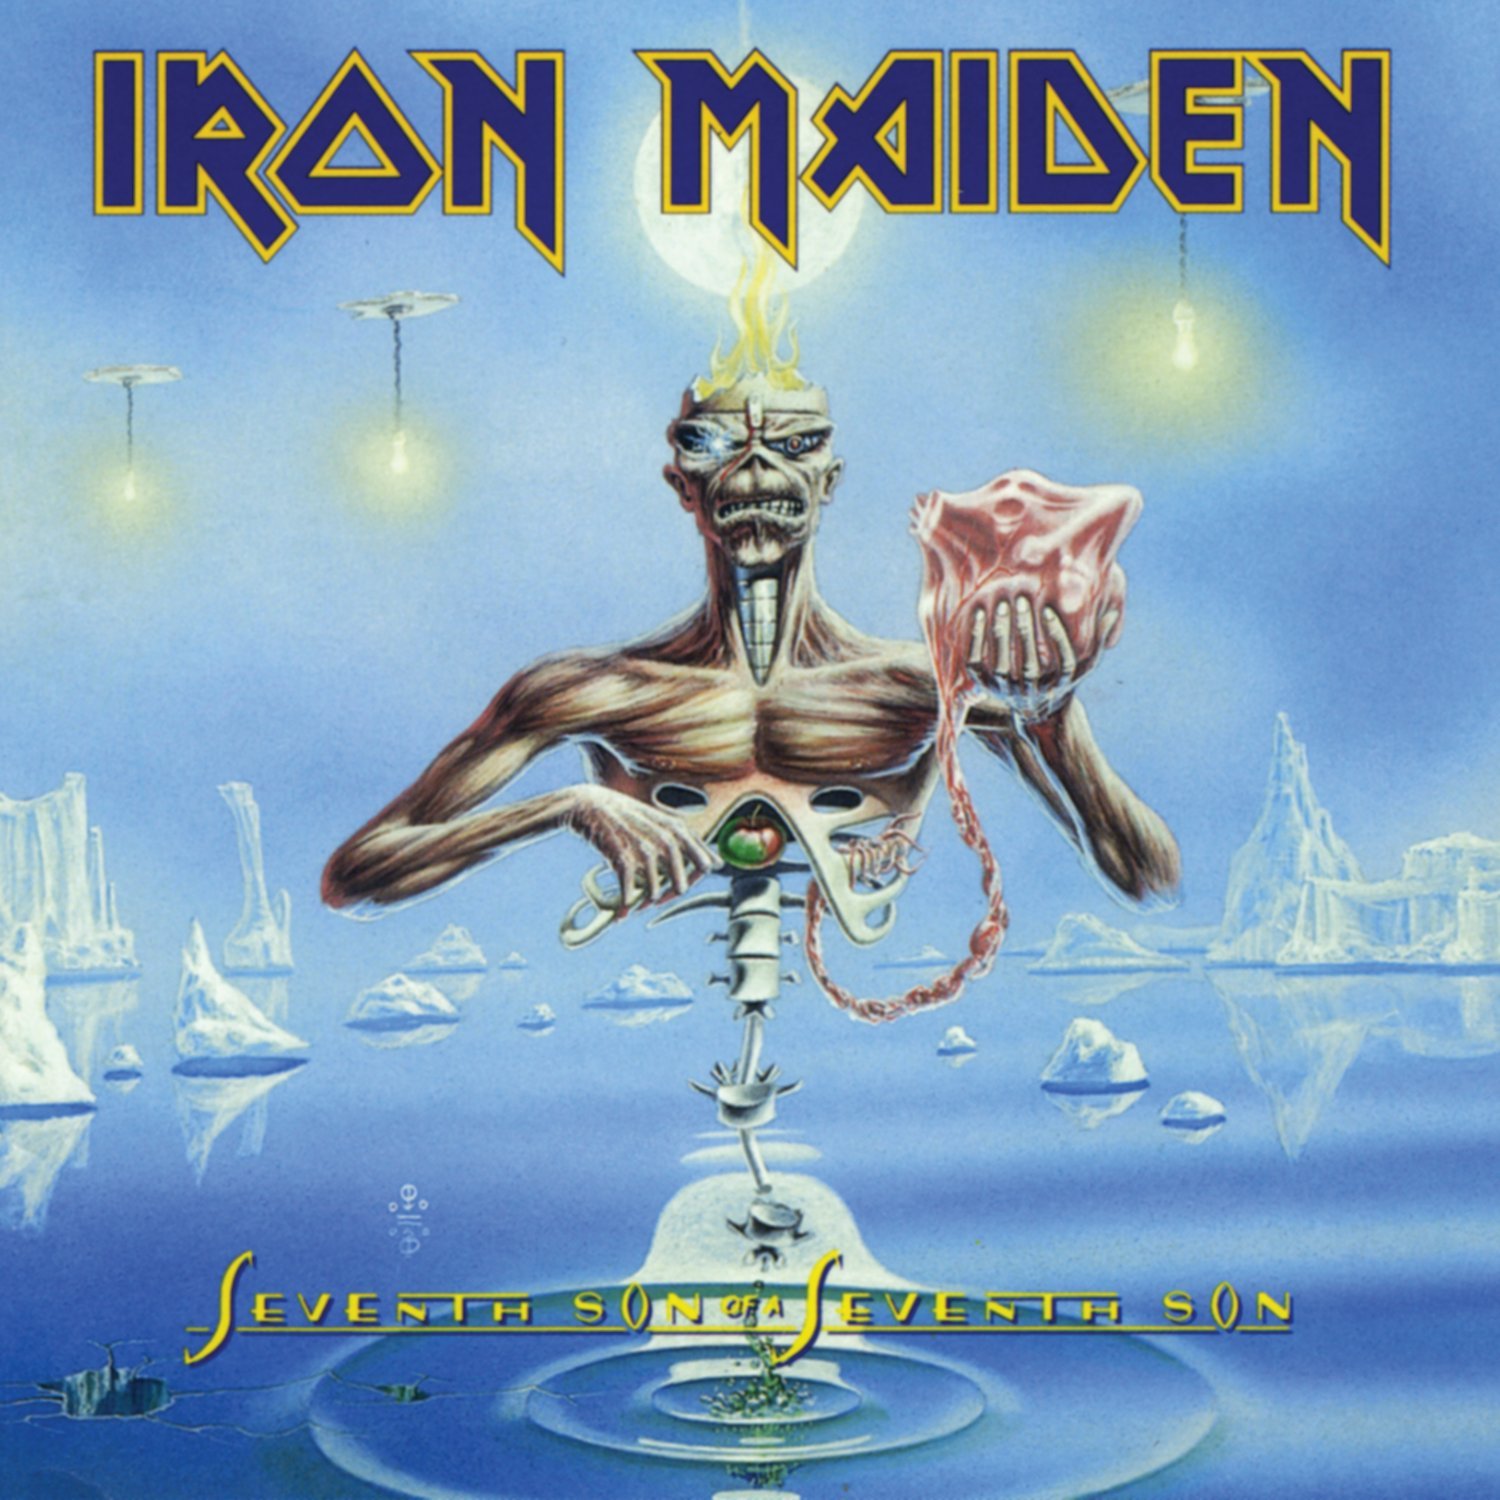 Vinile Iron Maiden - Seventh Son Of A Son 180gr NUOVO SIGILLATO EDIZIONE DEL SUBITO DISPONIBILE